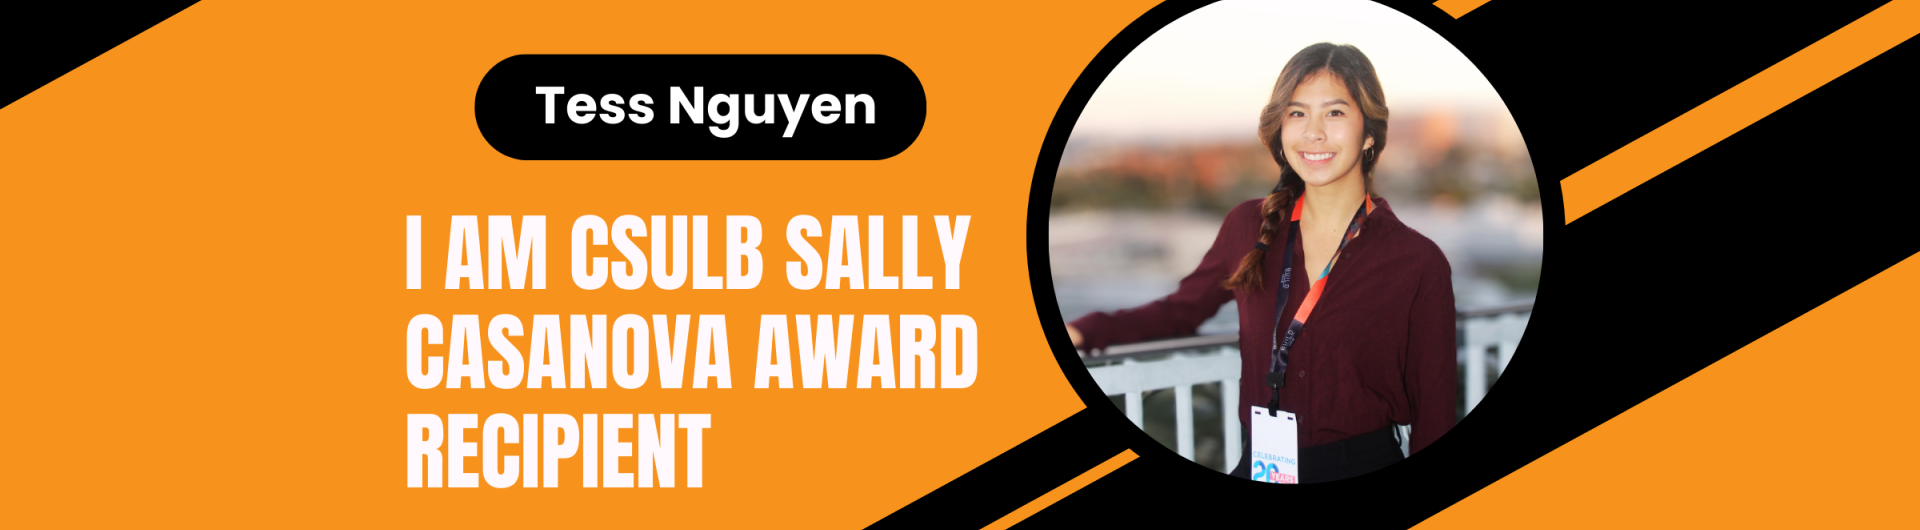 Sally Casanova Award - Tess Nguyen - Banner